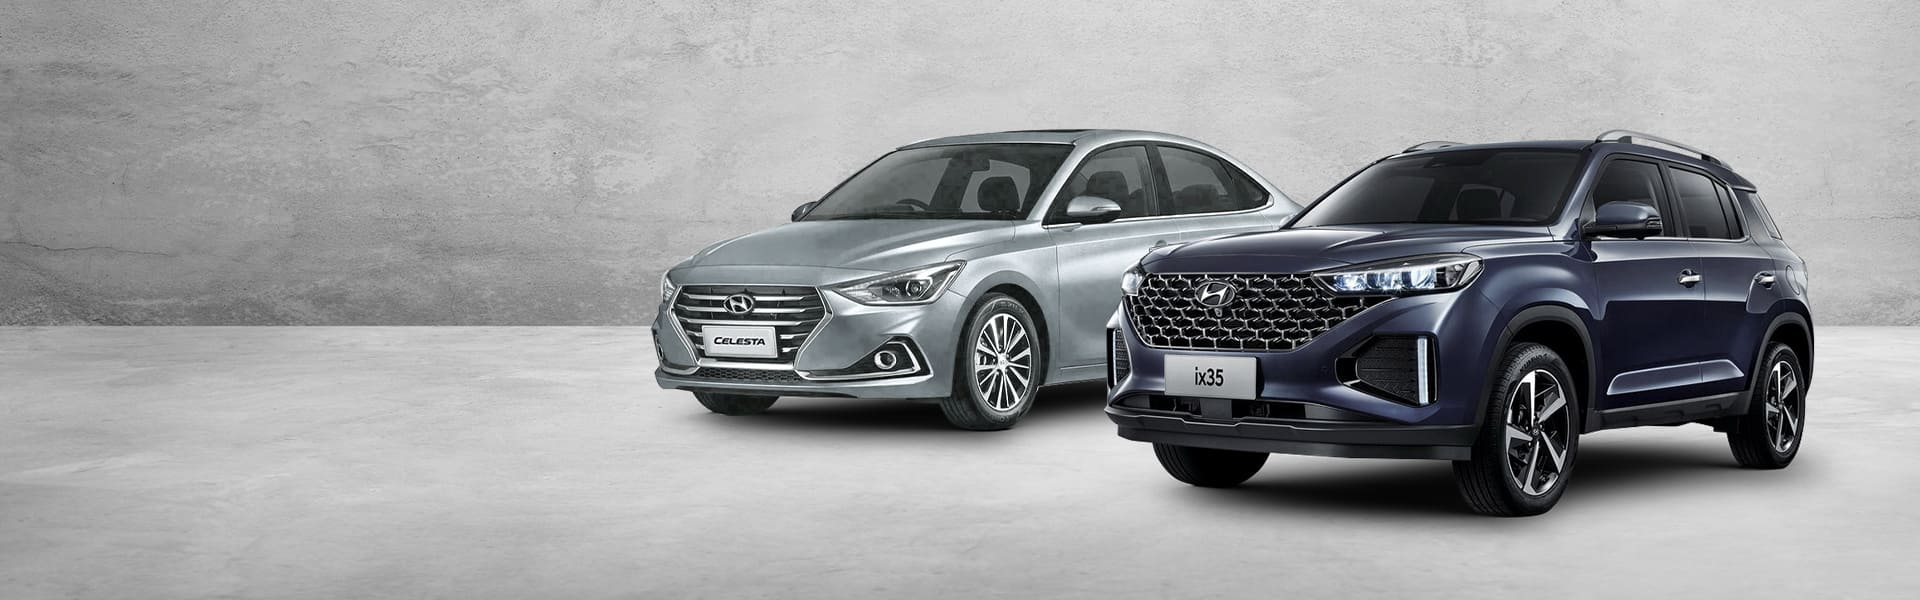 Новые Hyundai Сelesta и Hyundai ix35 с выгодой до 300 000р.